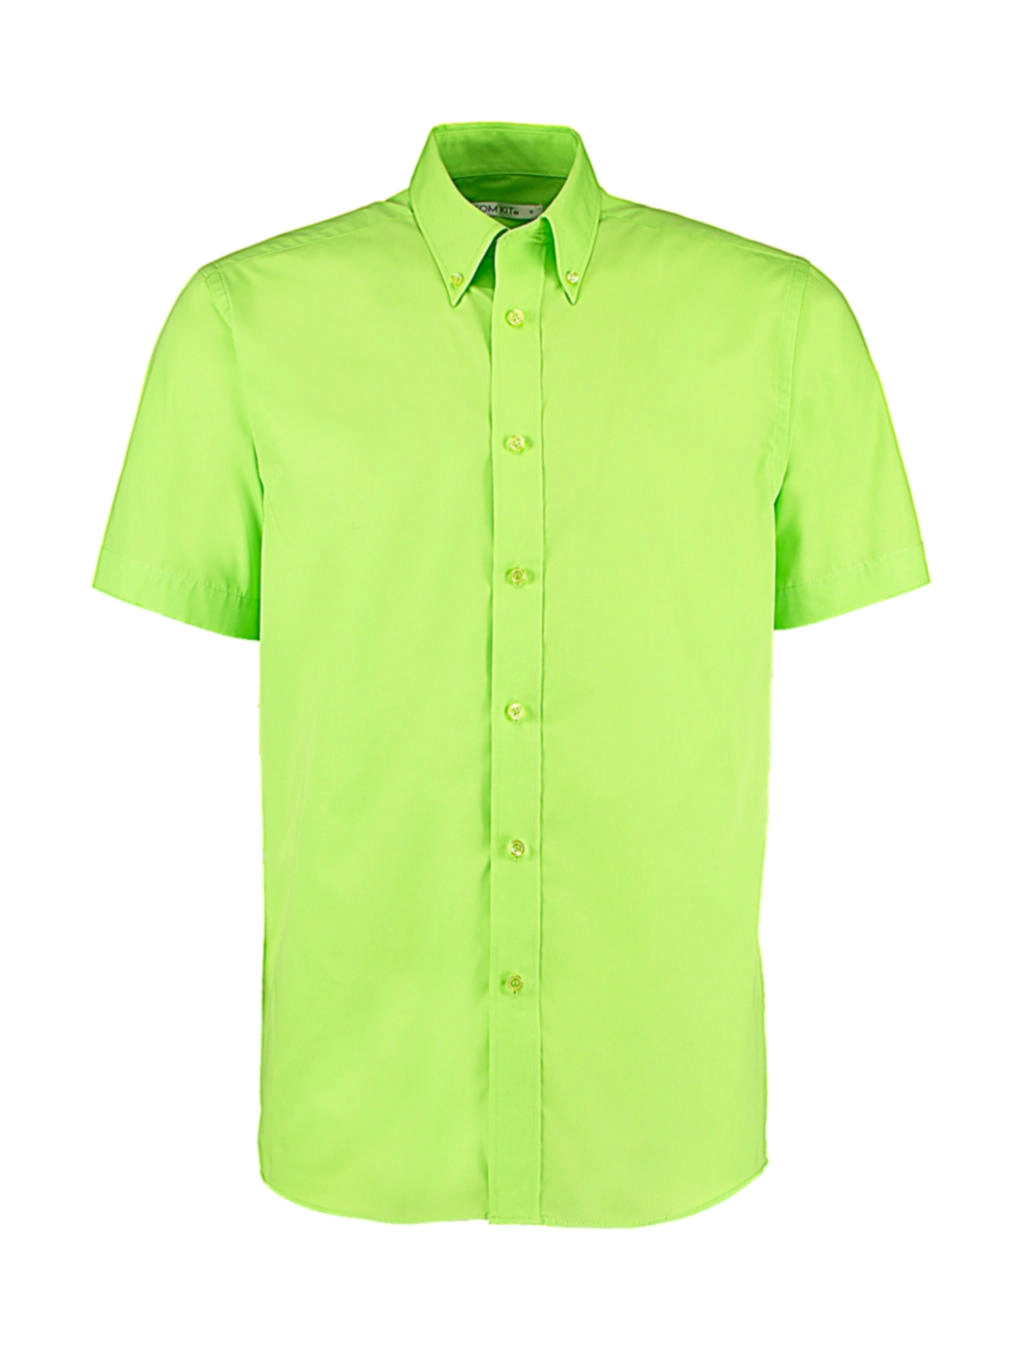 Classic Fit Workforce Shirt zum Besticken und Bedrucken in der Farbe Lime mit Ihren Logo, Schriftzug oder Motiv.